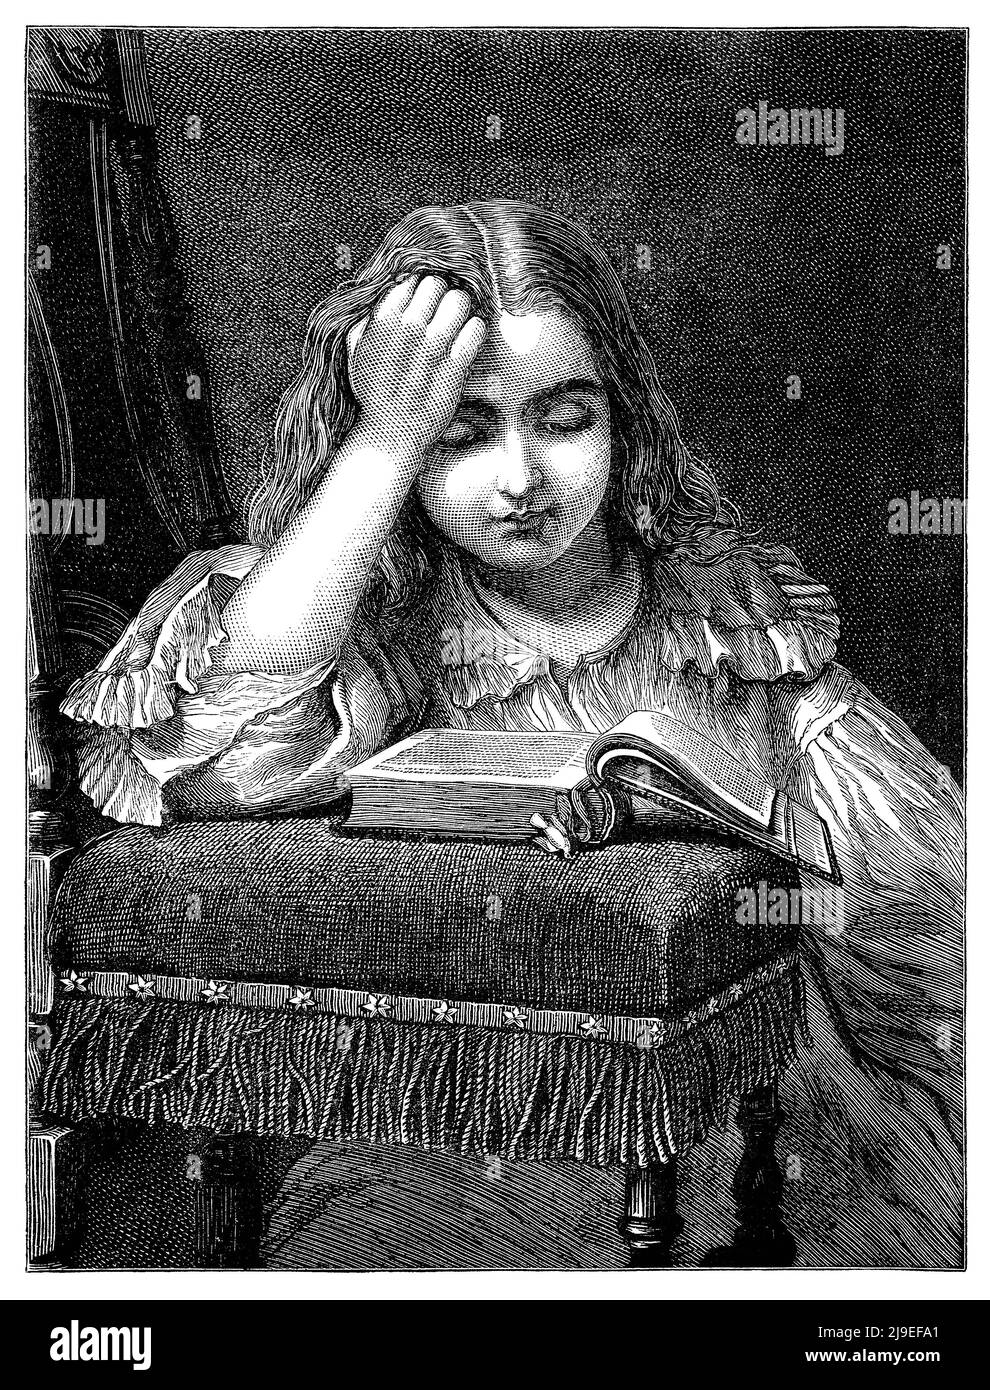 Grabado victoriano vintage de una joven leyendo un libro. Foto de stock